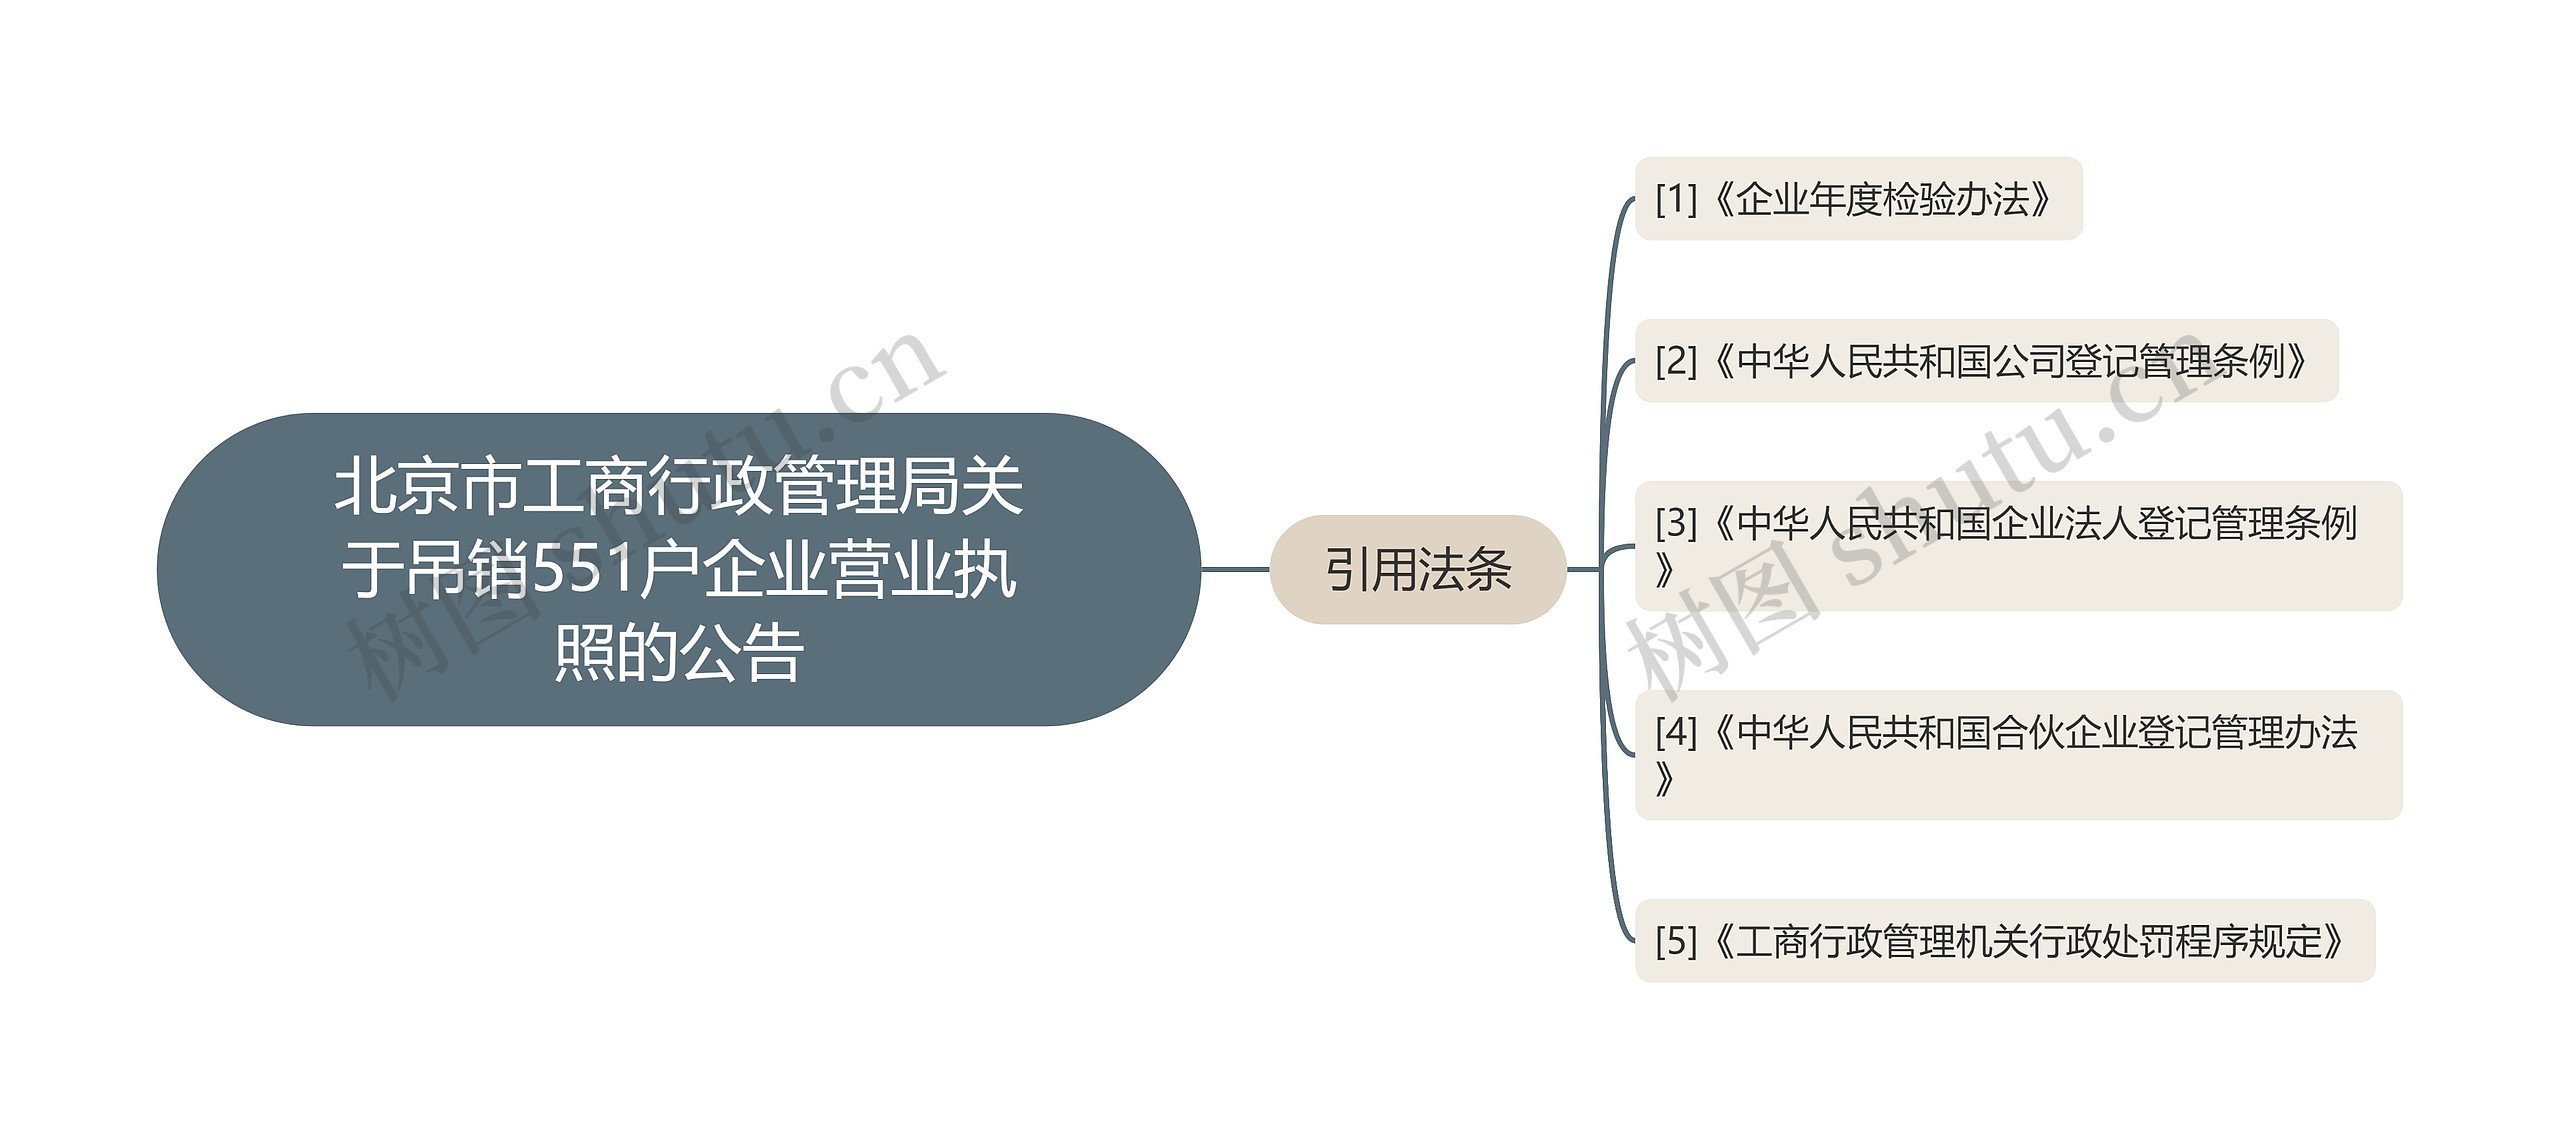 北京市工商行政管理局关于吊销551户企业营业执照的公告思维导图